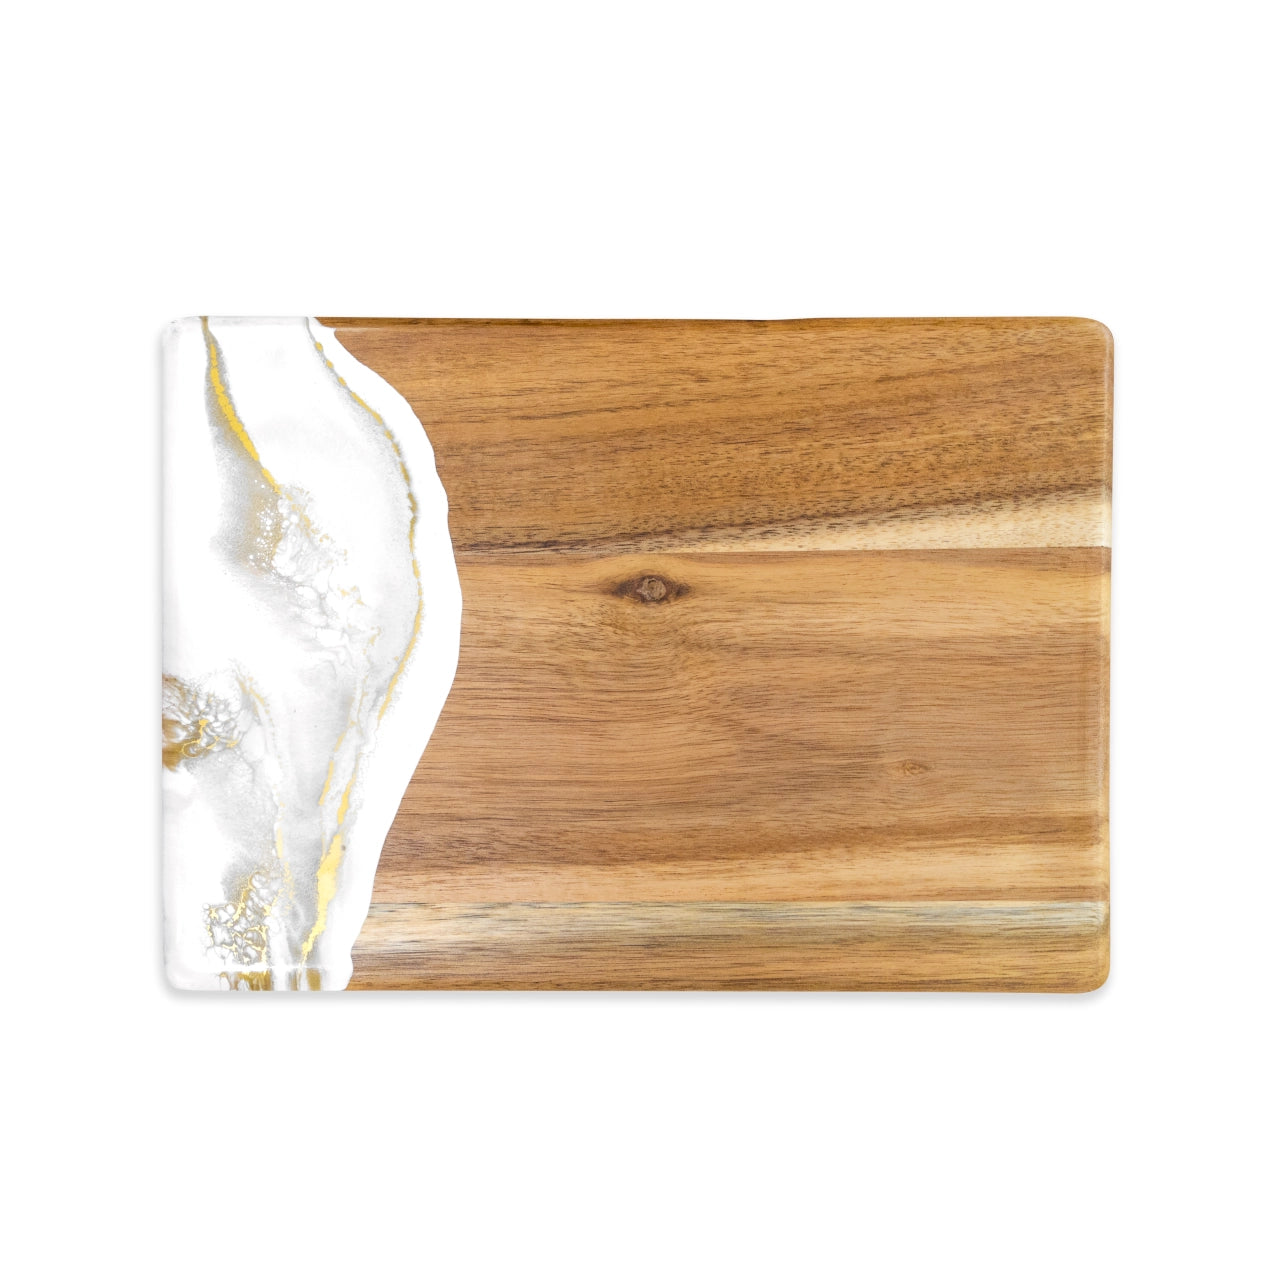 Small acacia wood and resin cheeseboard - quartz